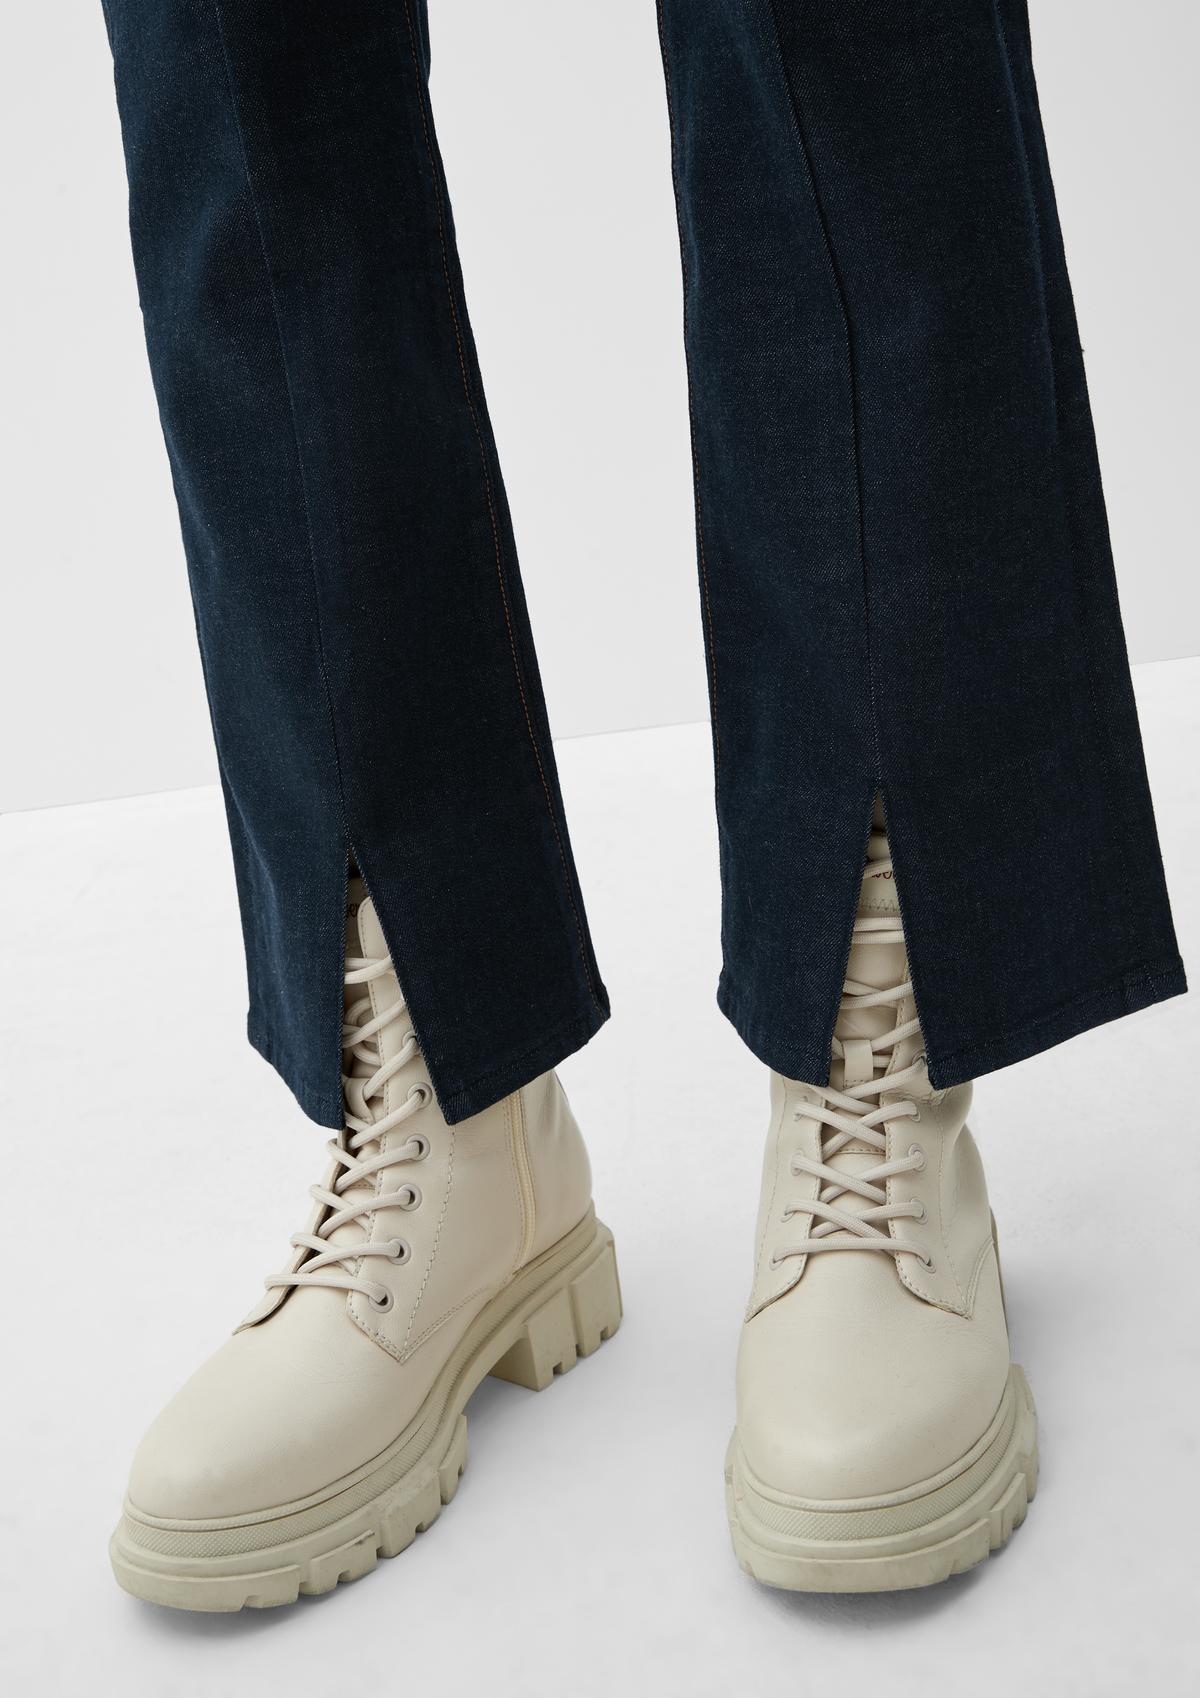 s.Oliver Slim: jeans met bootcut leg